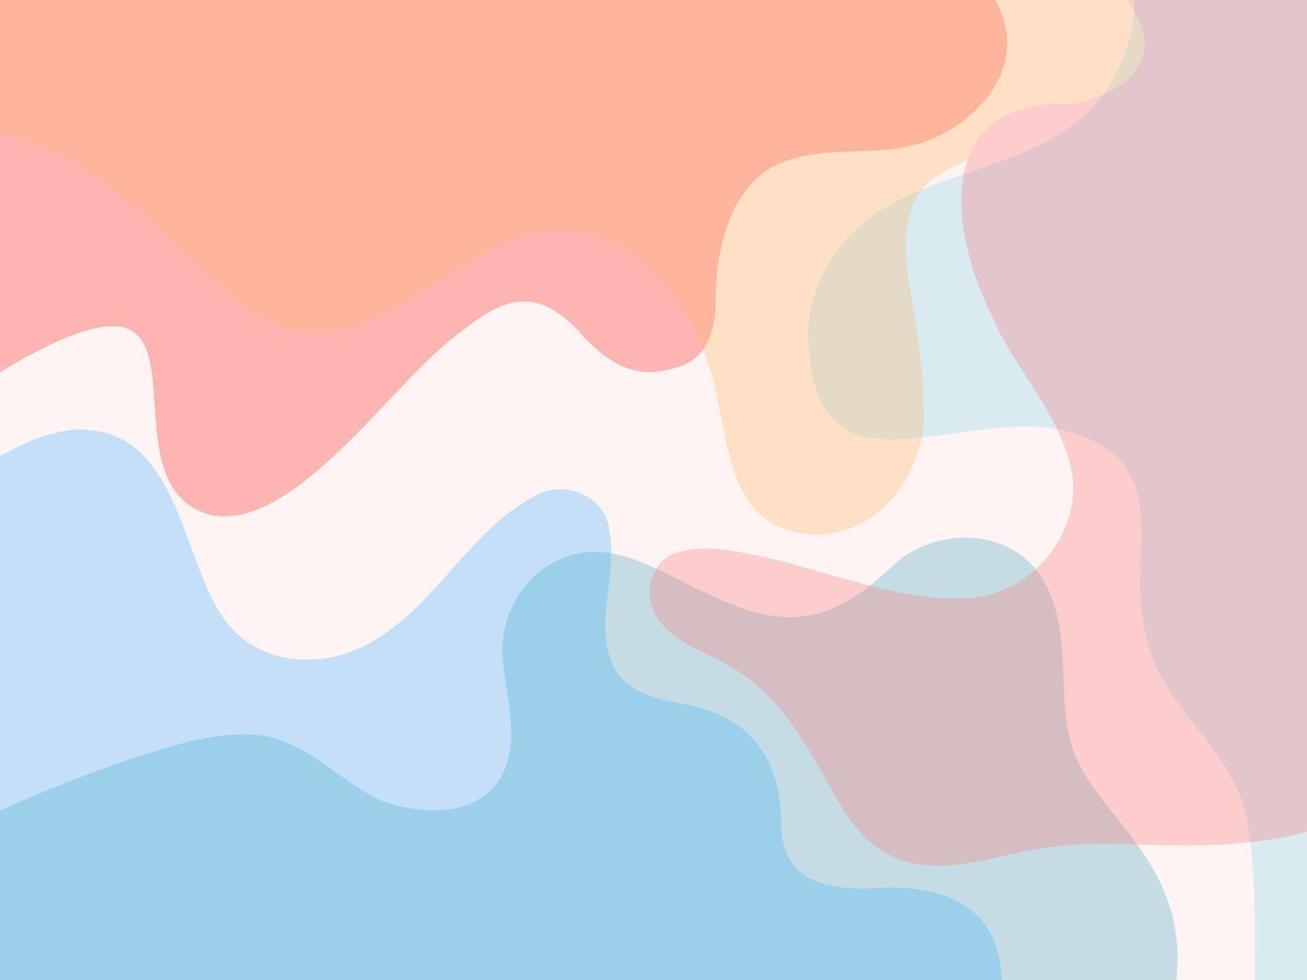 stile del modello di colore pastello liquido dell'onda. vettore di sfondo astratto colorato